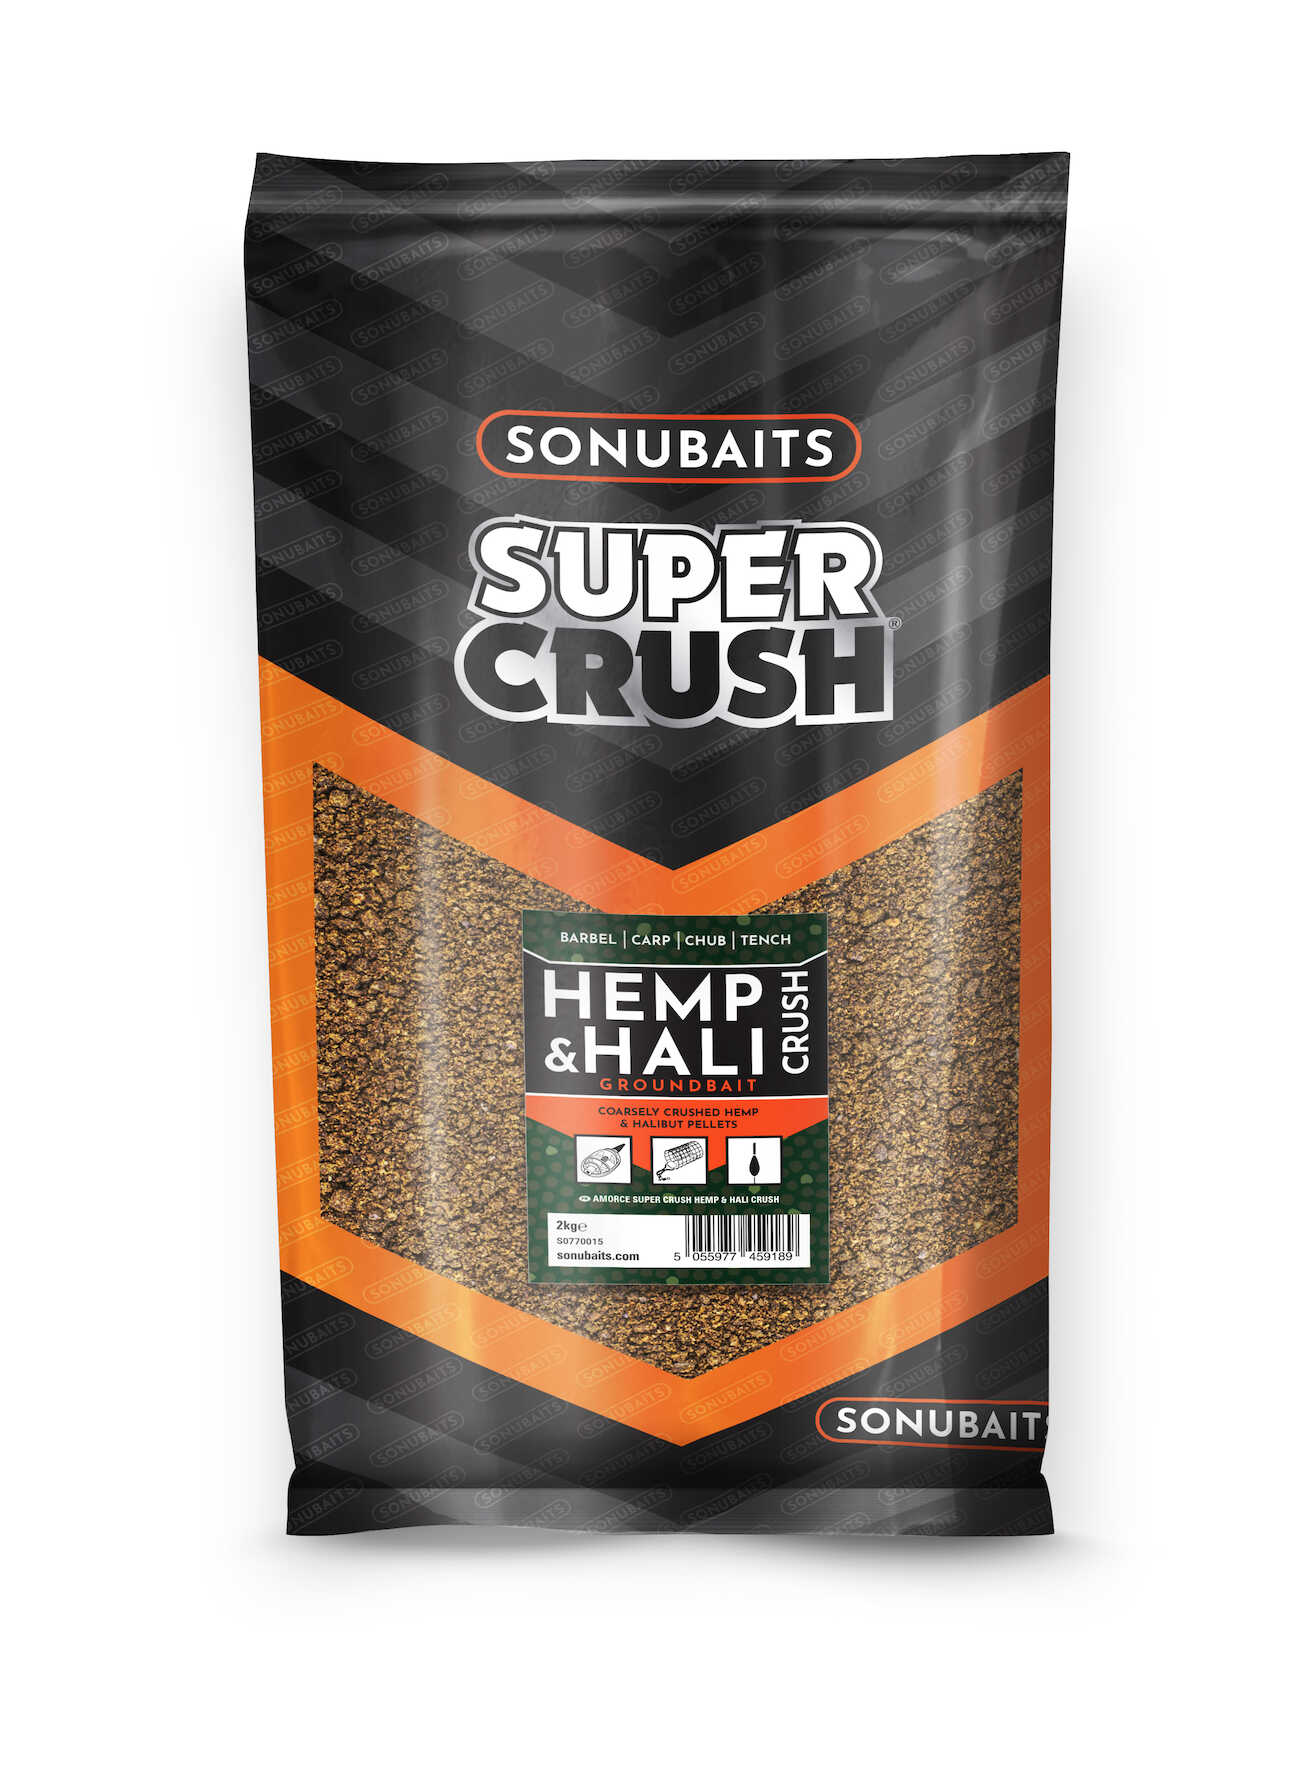 Sonubaits Supercrush Hemp & Hali Groundbait (2kg)